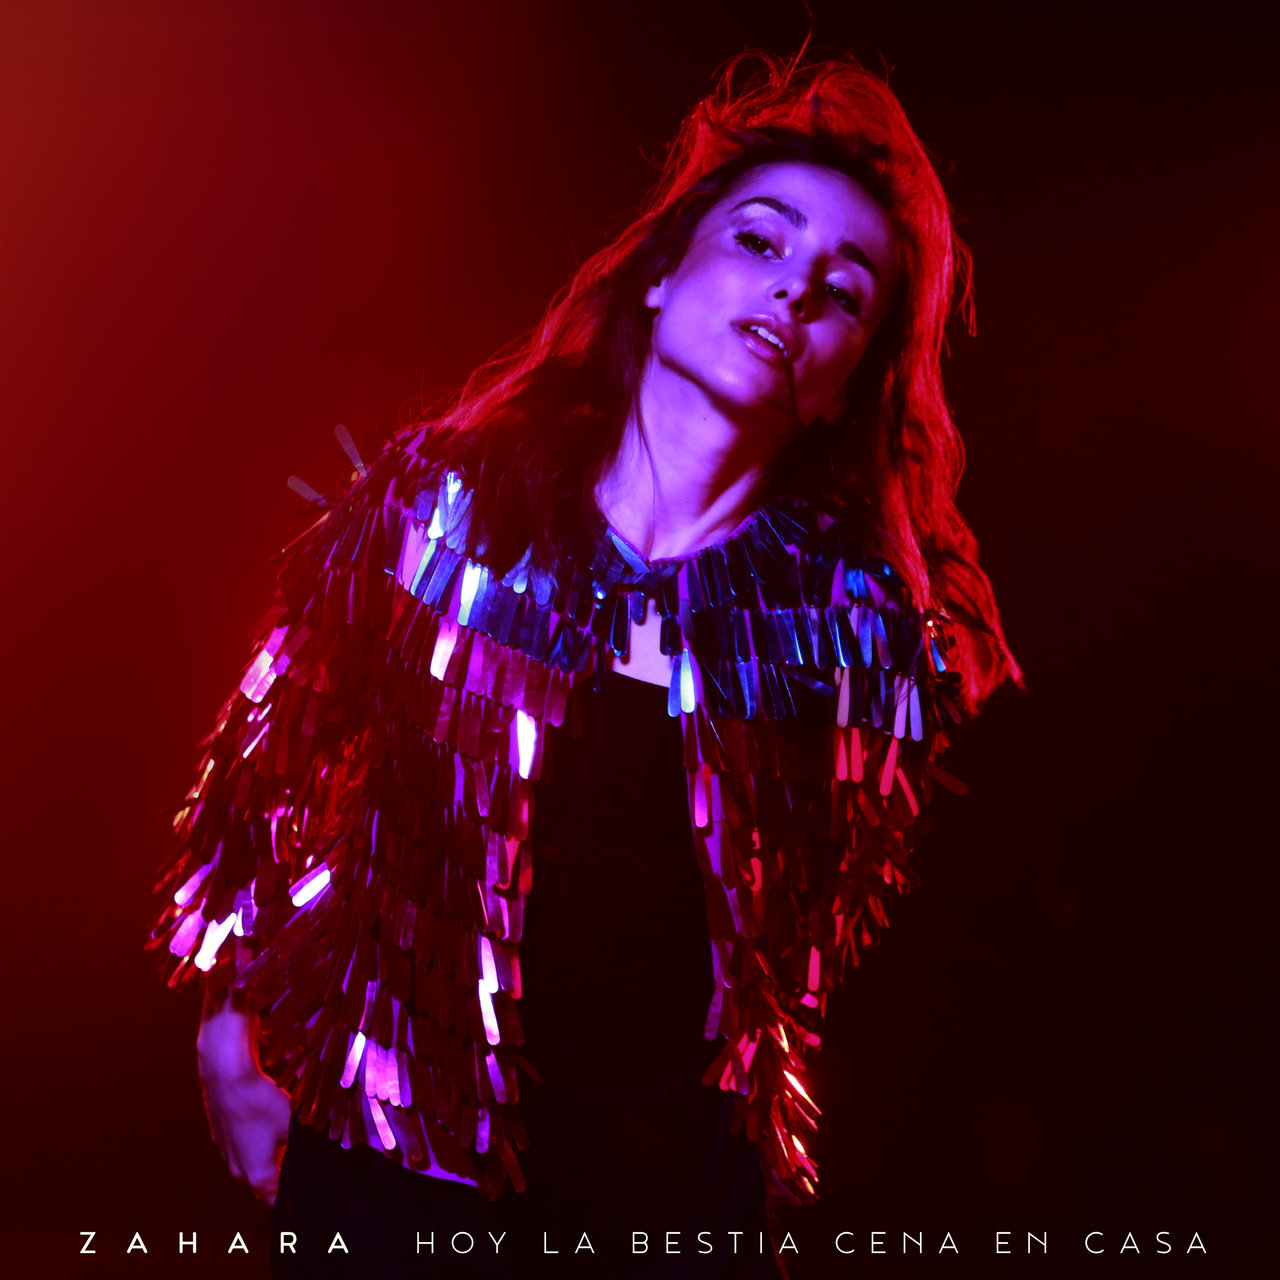 Zahara Hoy la Bestia Cena en Casa cover artwork